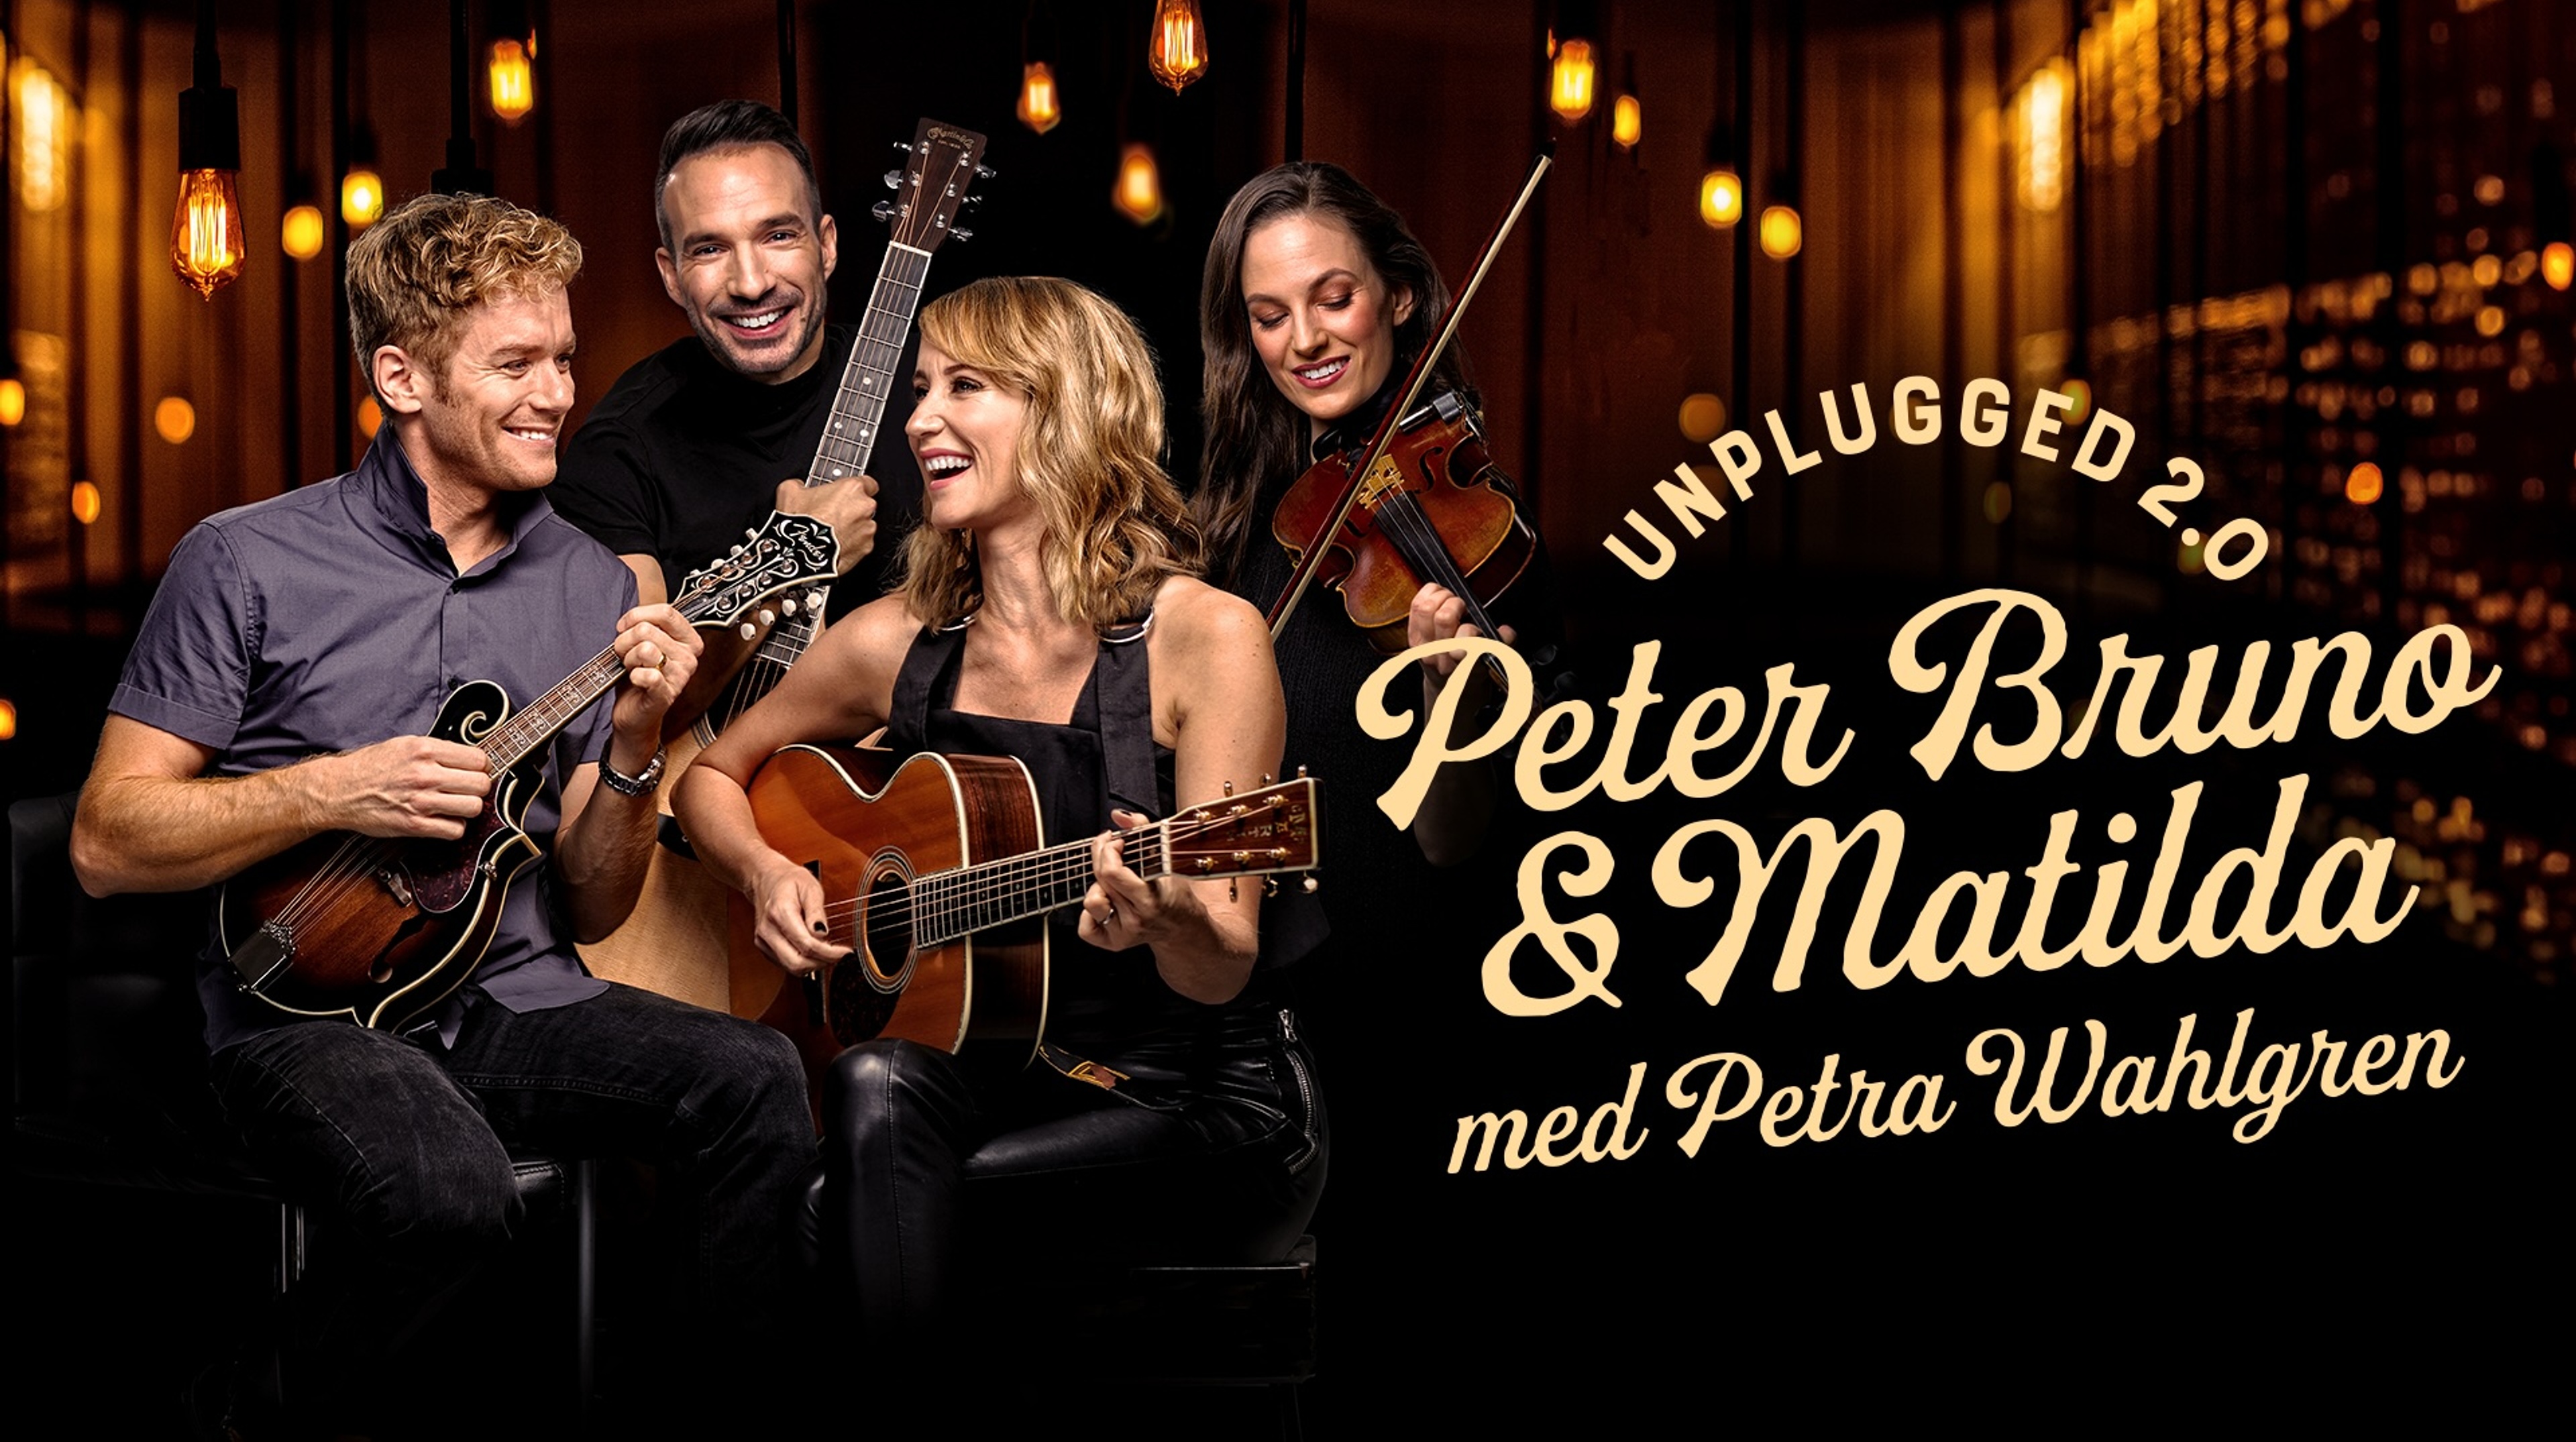 Alla fyra medverkande håller i varsitt instrument, bas, fiol, gitarr, ukulele. Text: Unplugged 2.0 Peter Bruno & Matilda med Petra Wahlgren 